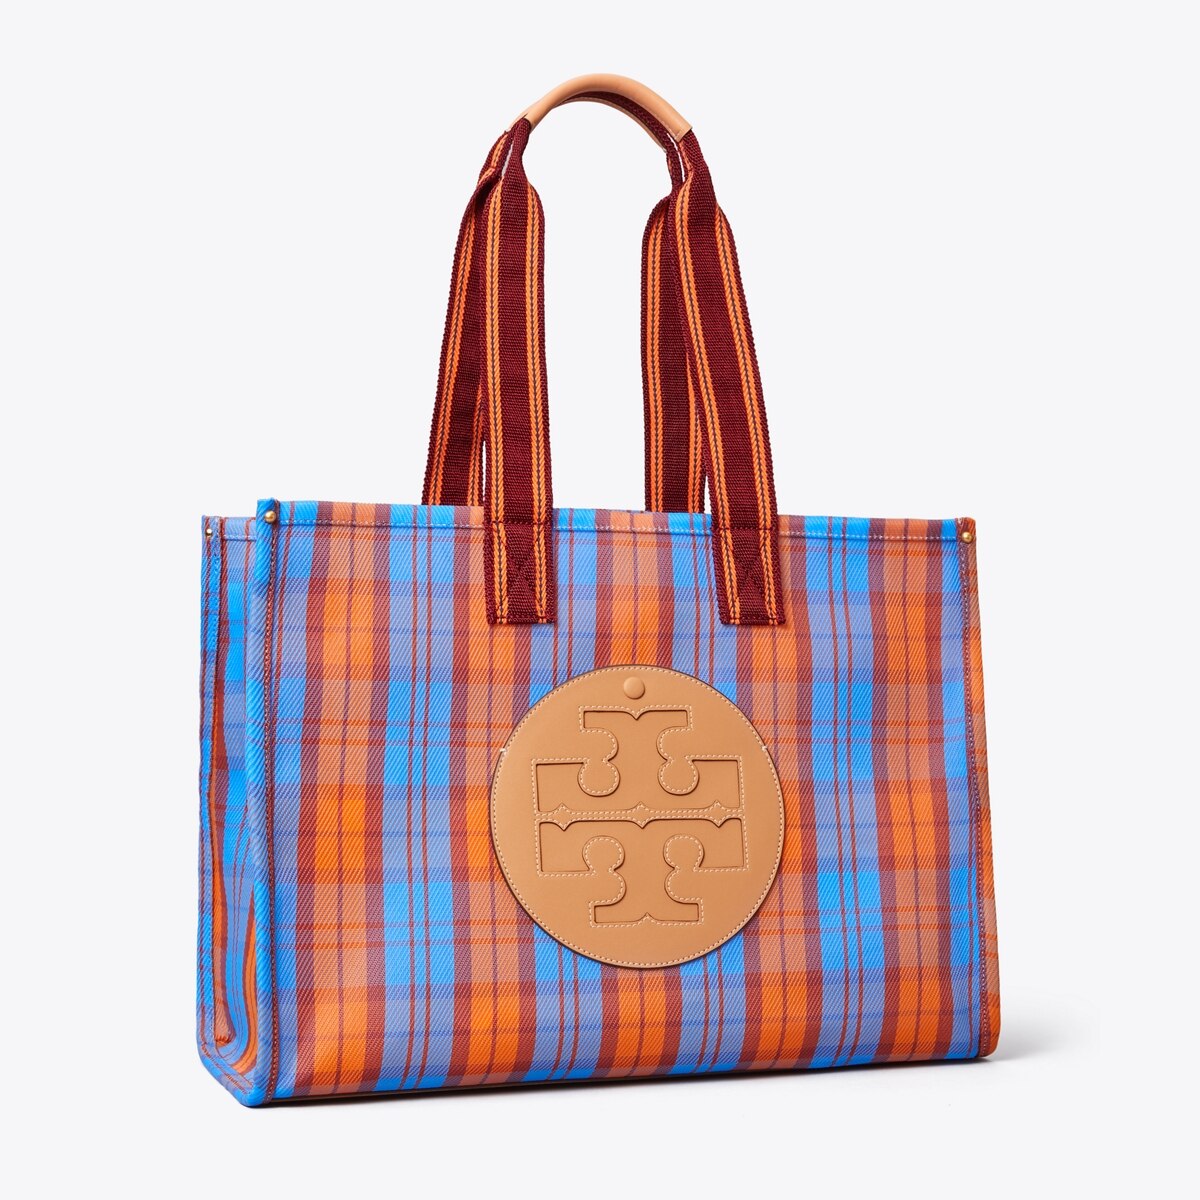 Ella Mesh Market Tote Bag: Women's Designer Tote Bags | Tory Burch